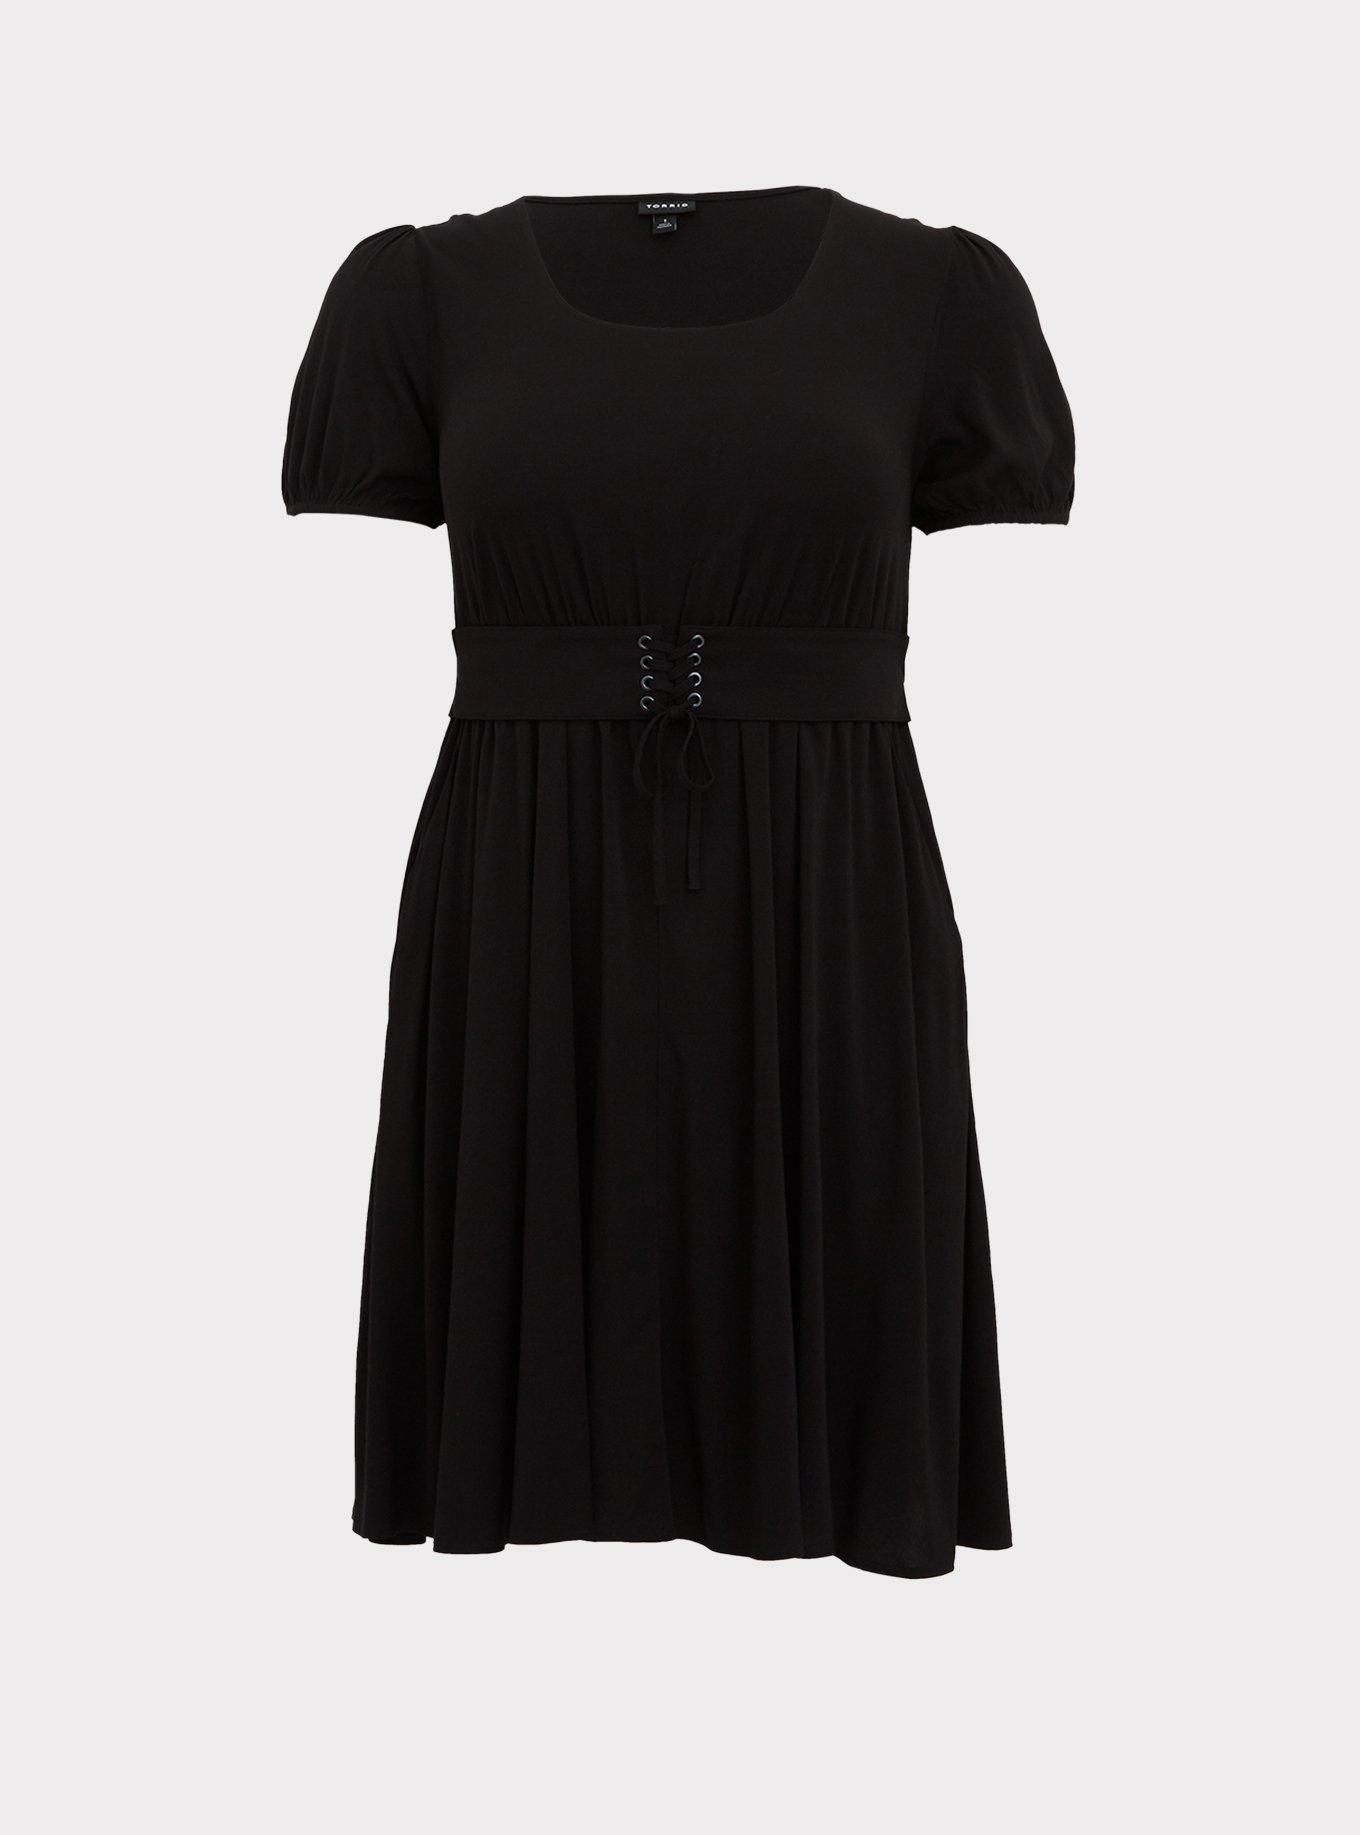 Plus Size - Black Challis Lace-Up Waist Skater Dress - Torrid